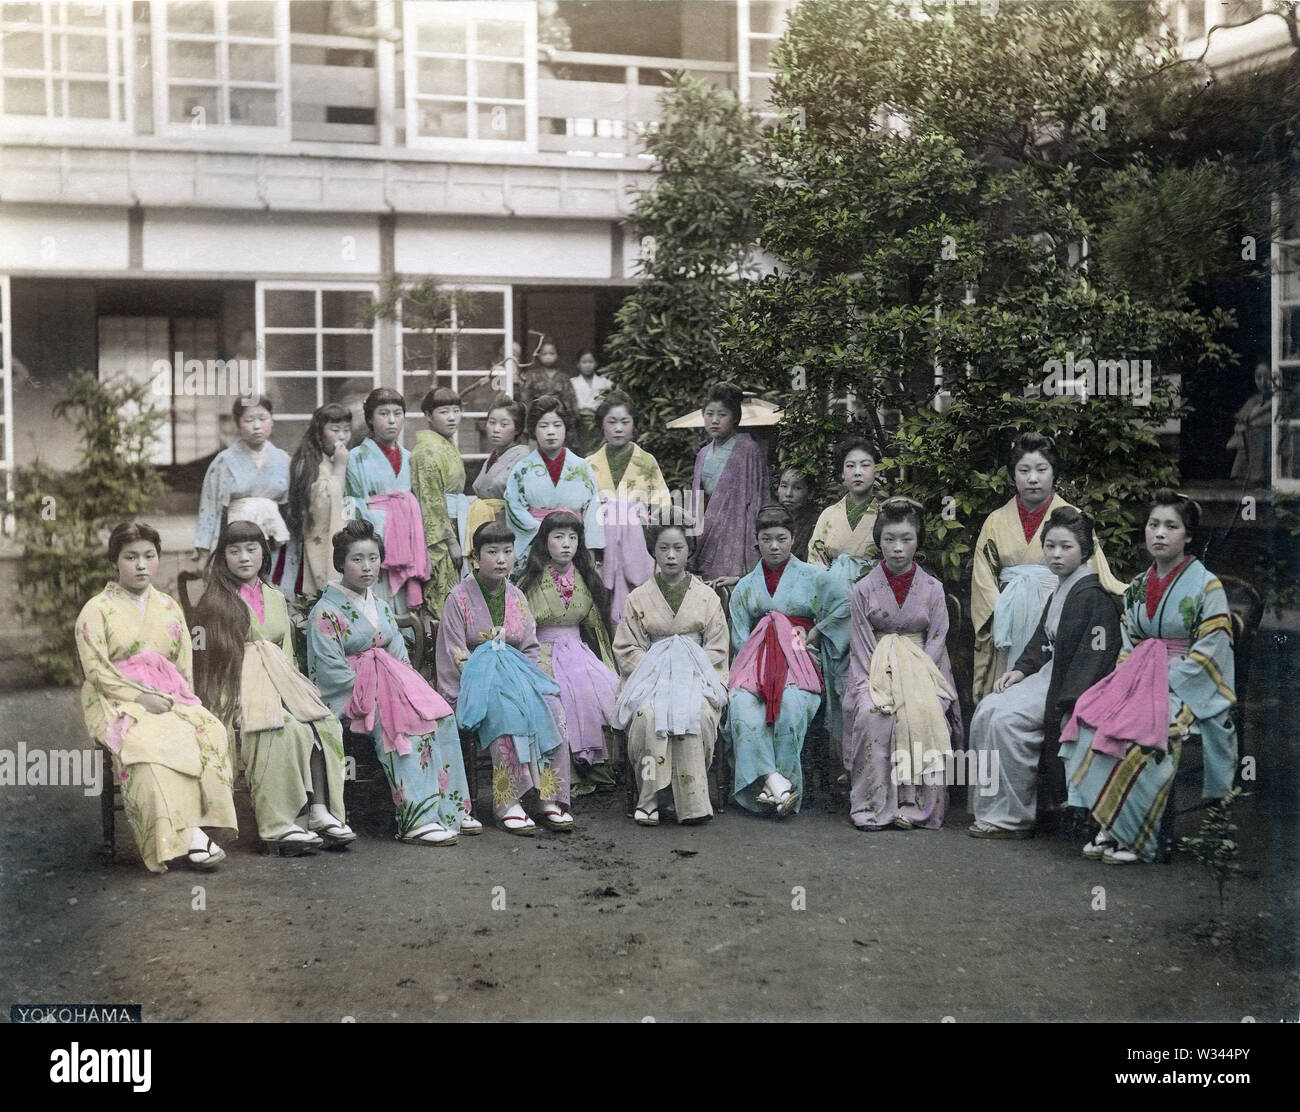 [1890s Japan - japanische Prostituierte] - Prostituierte in den Garten eines Hauses der Prostitution in Yokohama, Kanagawa Präfektur, Ca. In den 1880ern. 19 Vintage albumen Foto. Stockfoto